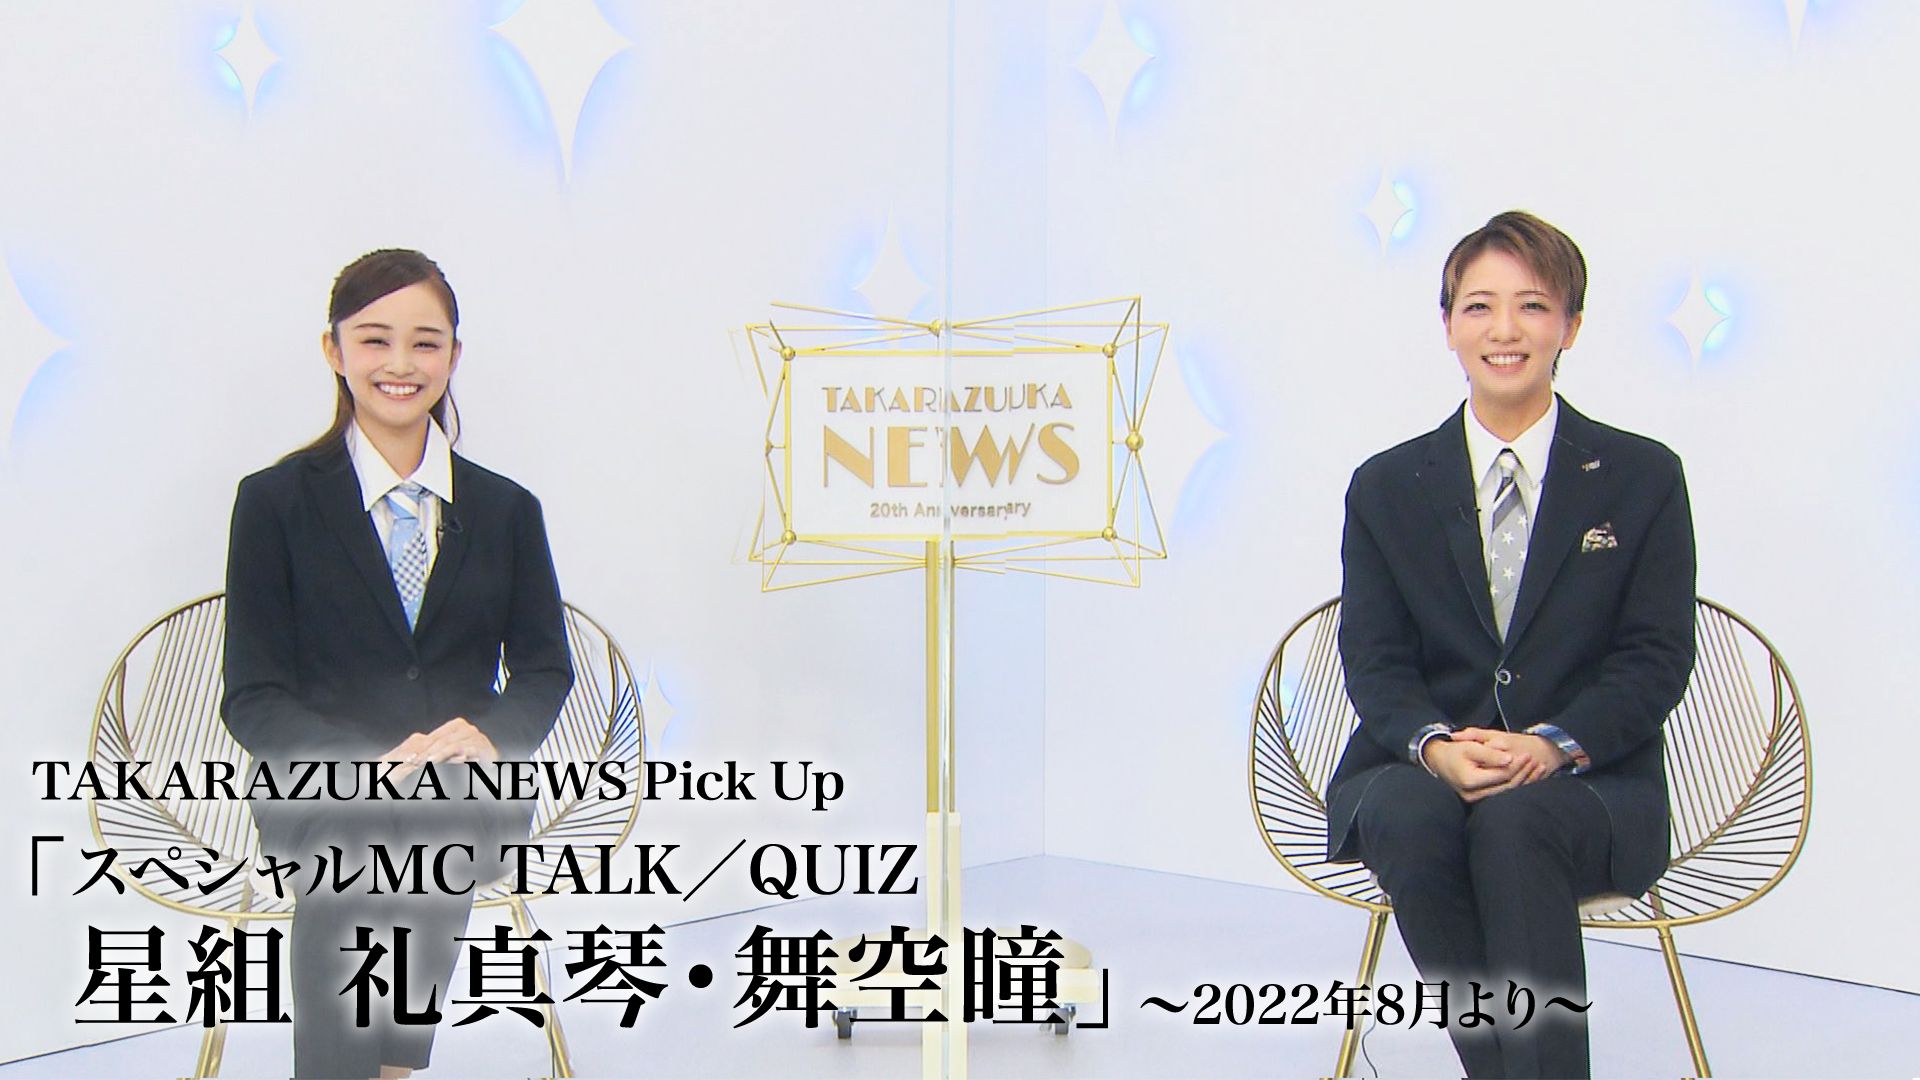 TAKARAZUKA NEWS Pick Up「スペシャルMC TALK/QUIZ 星組 礼真琴・舞空瞳」〜2022年8月より〜